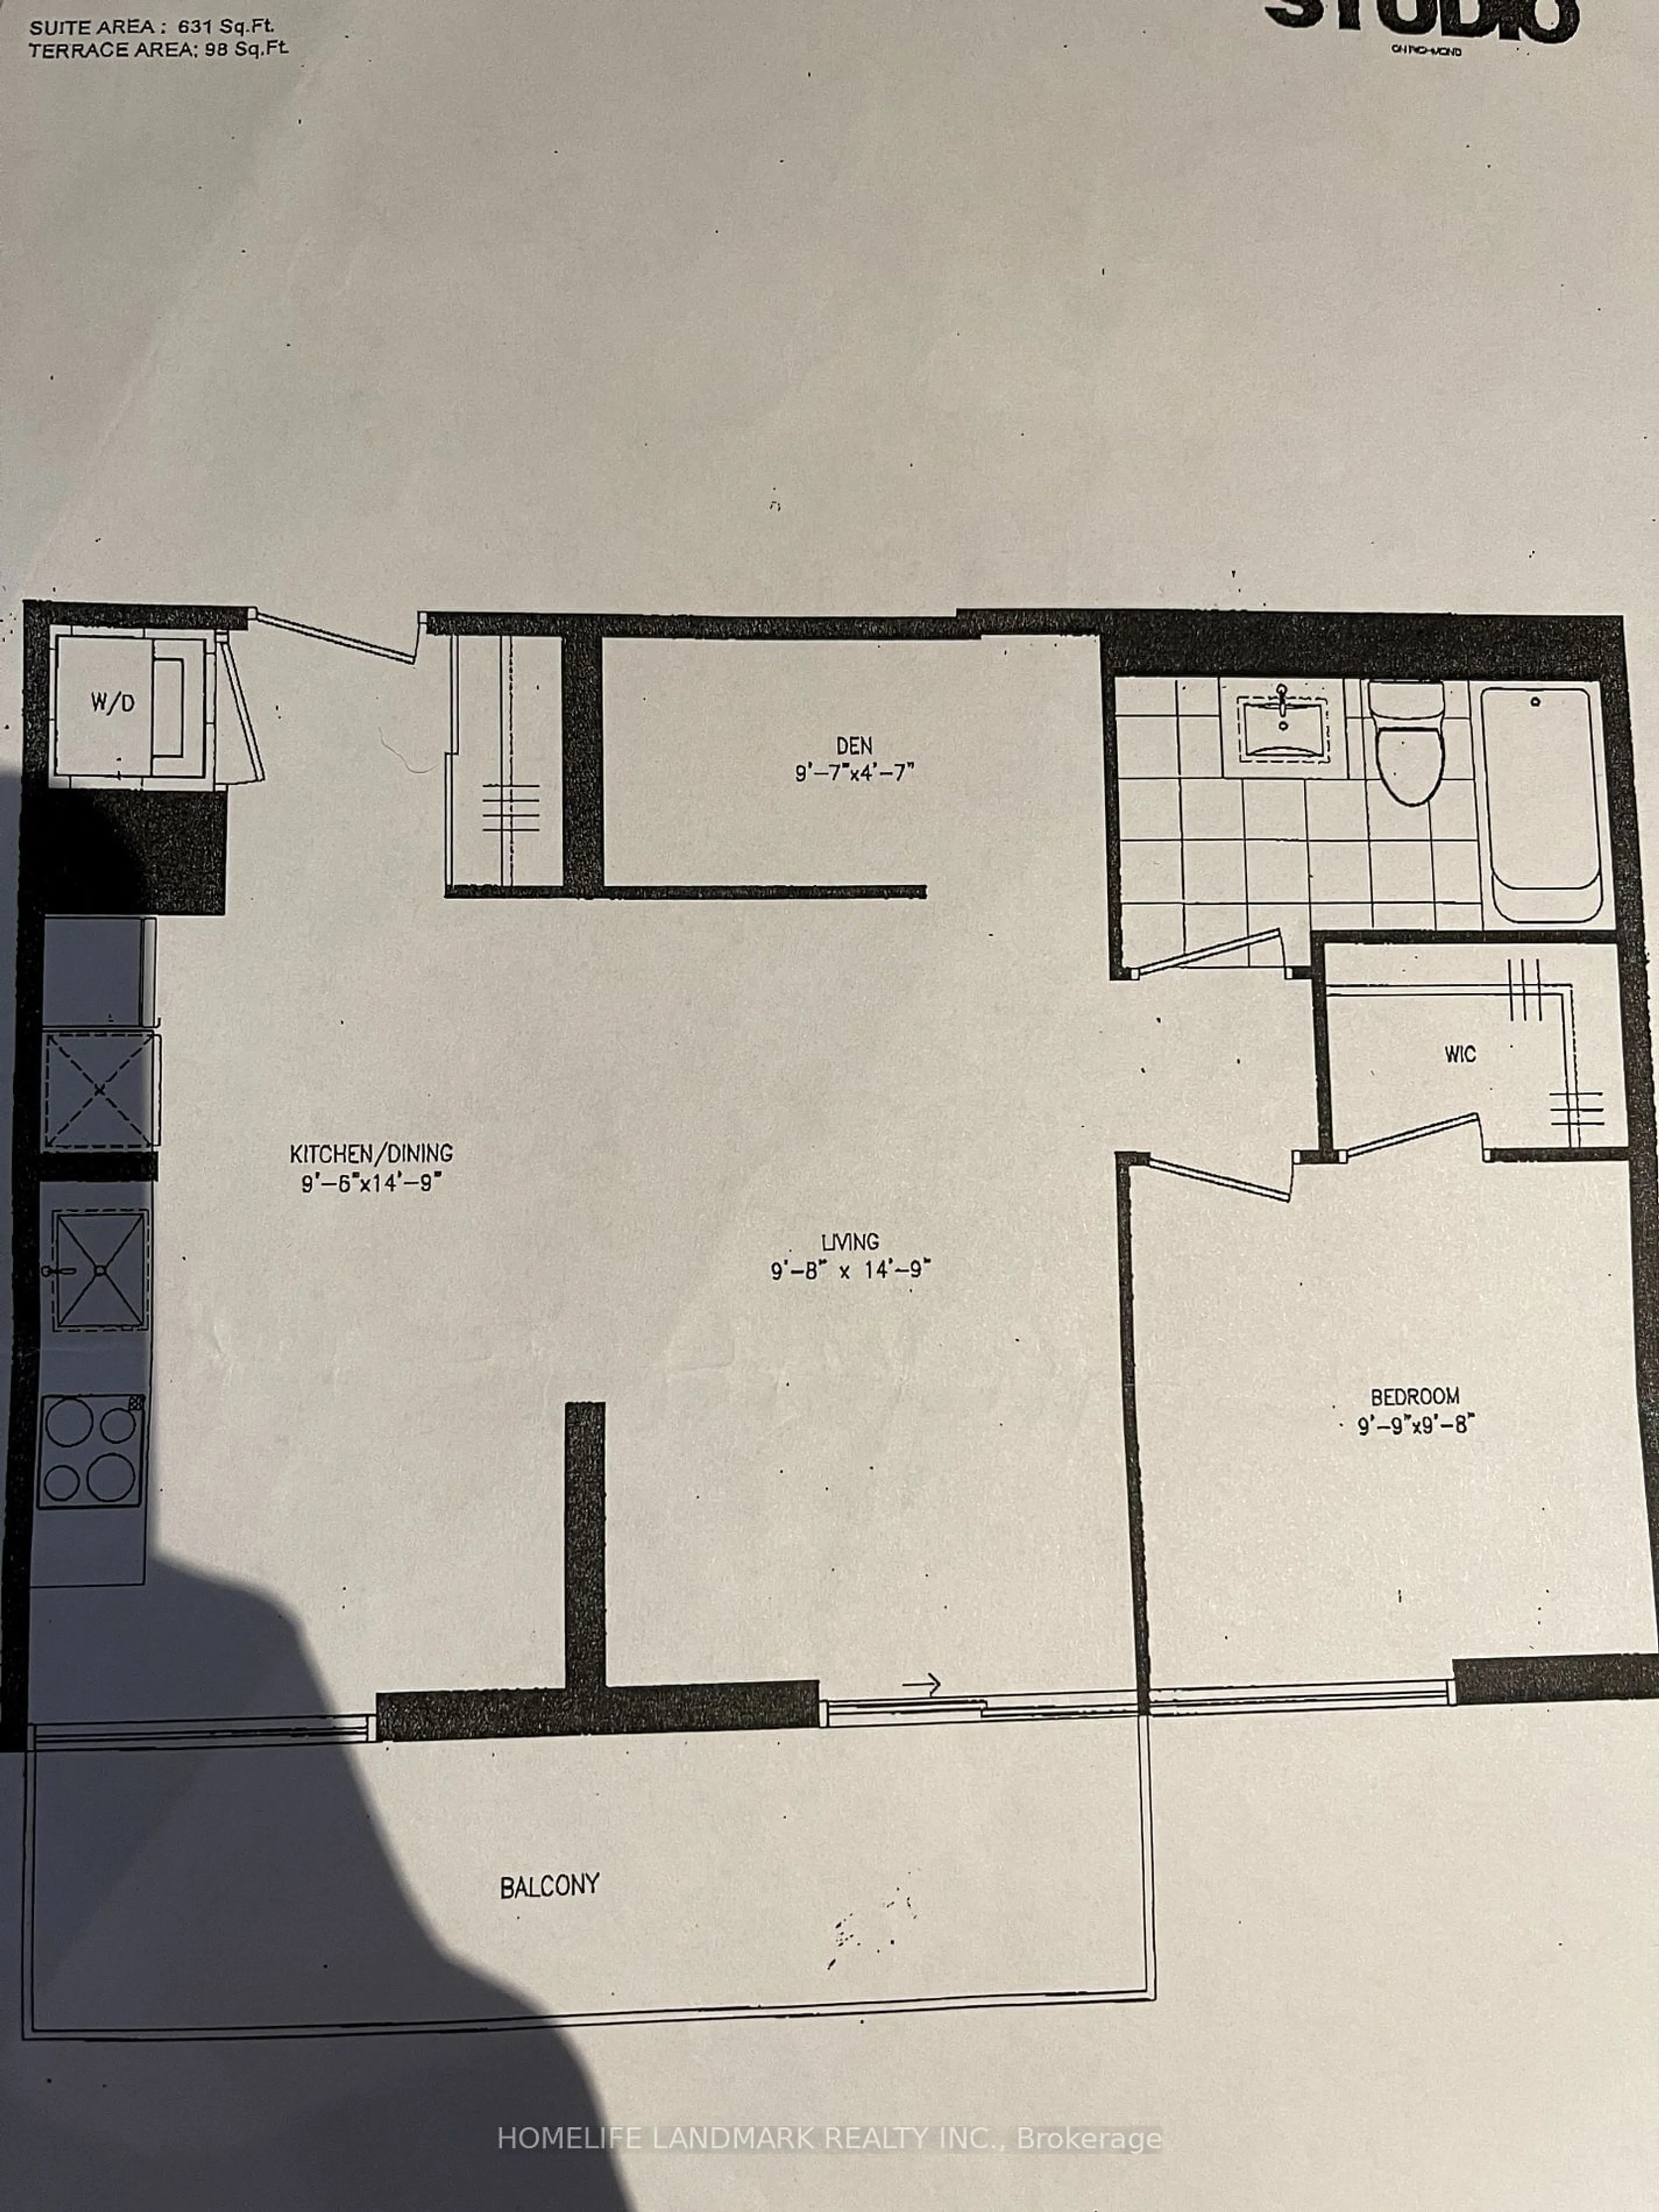 Floor plan for 30 Nelson St #412, Toronto Ontario M5V 0H5